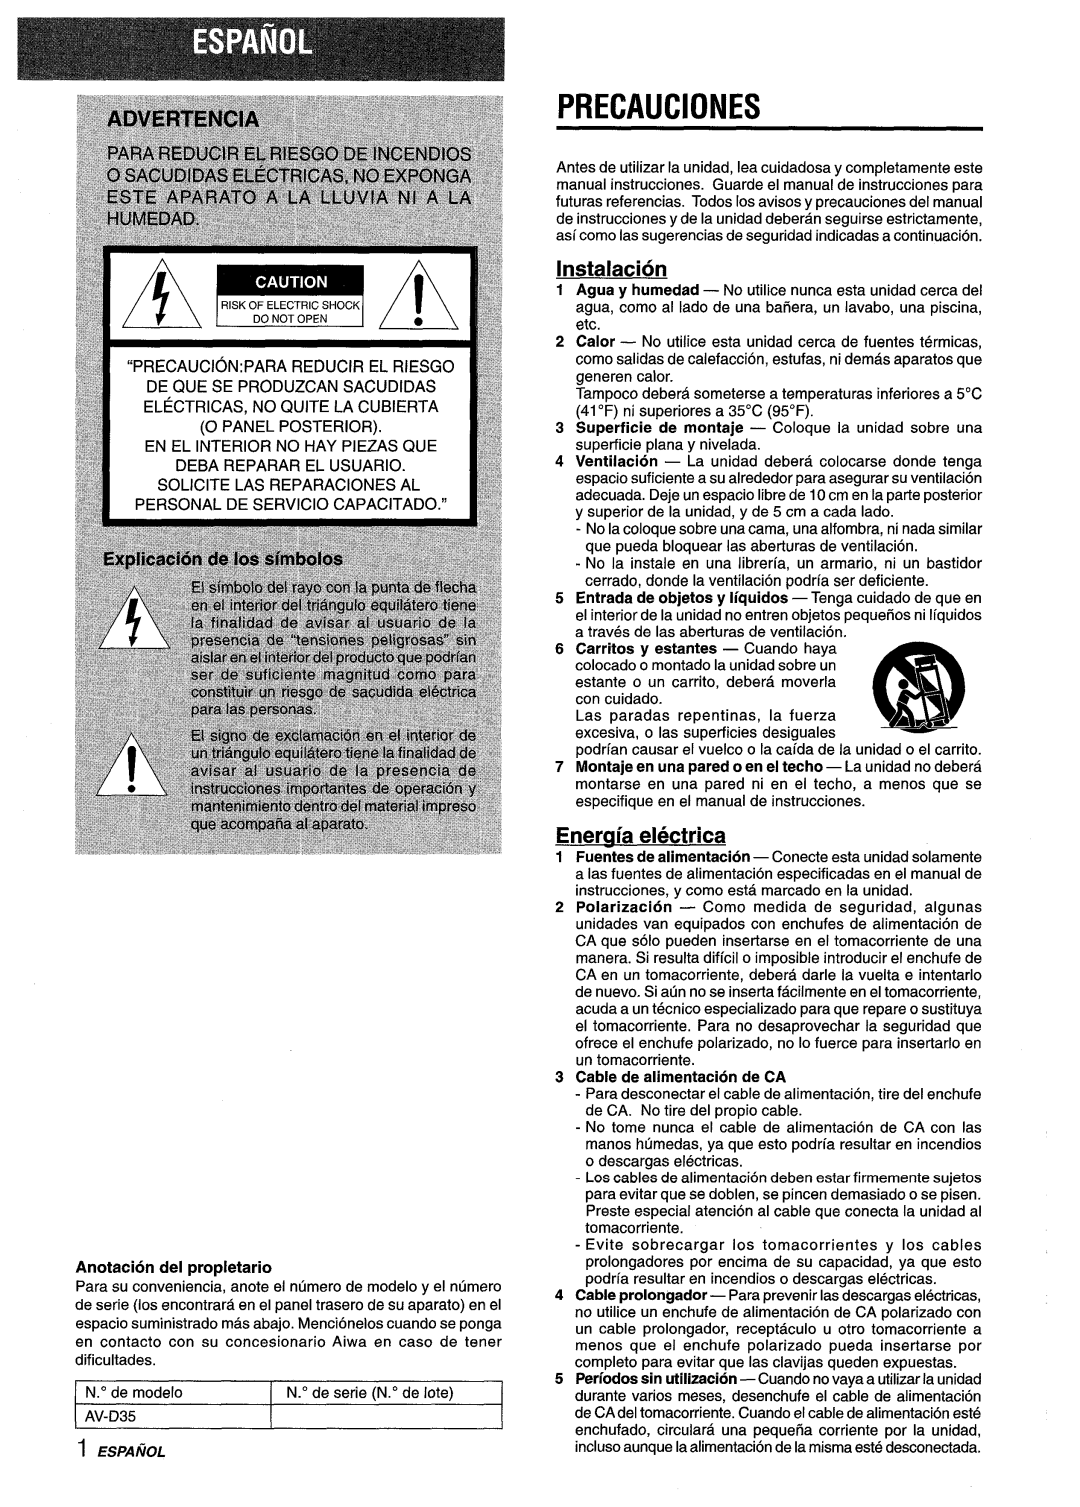 Aiwa AV-D35 manual Precauciones, Instalacion, Eneraia electrica, Anotacion del propletario, Cable de alimentacion de CA 